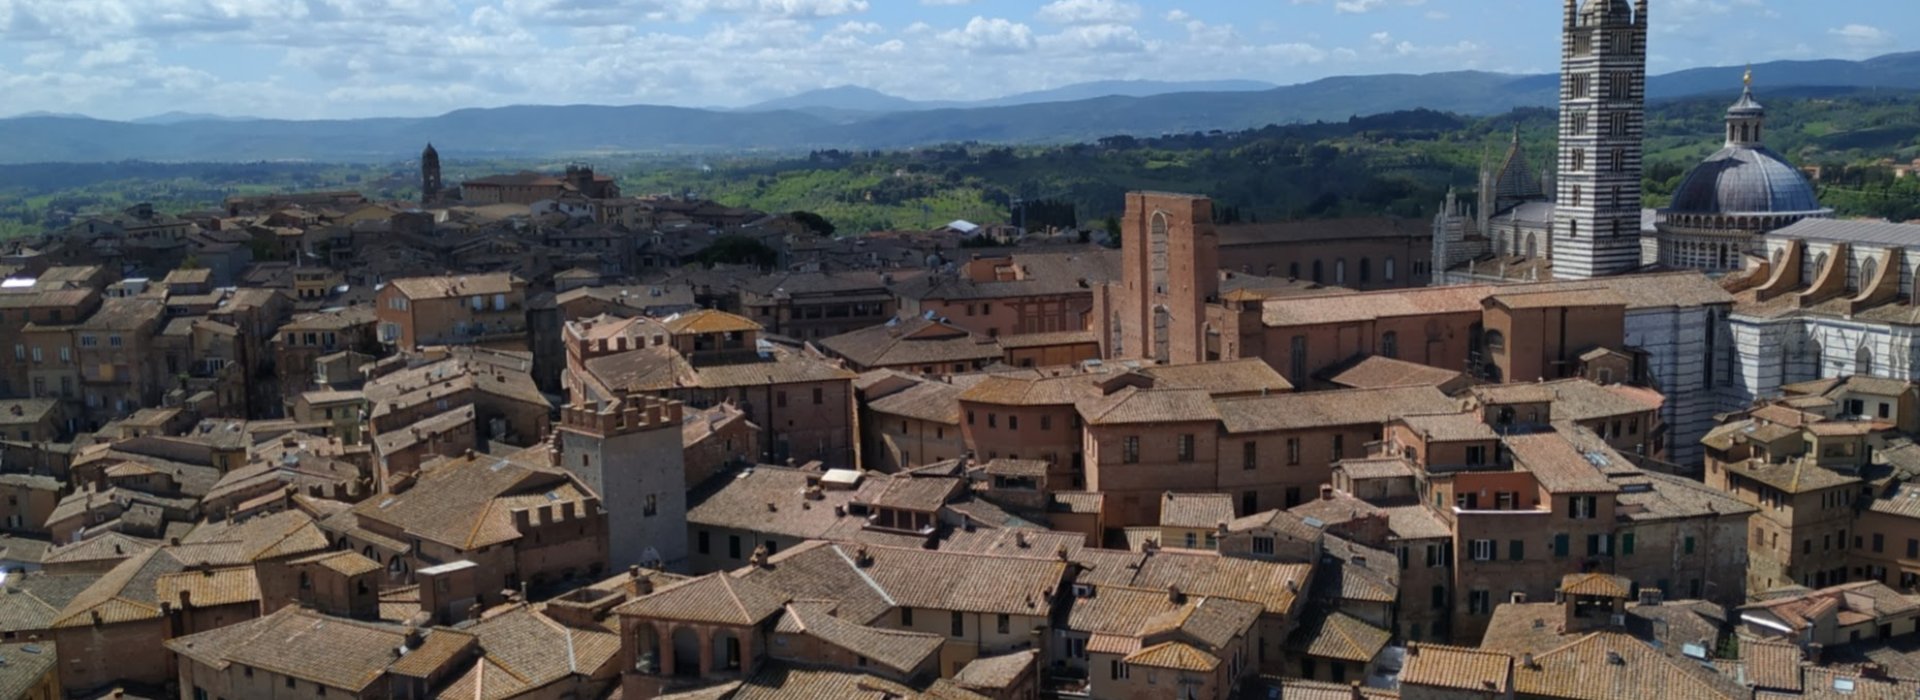 La veduta di Siena dalla Torre del Mangia